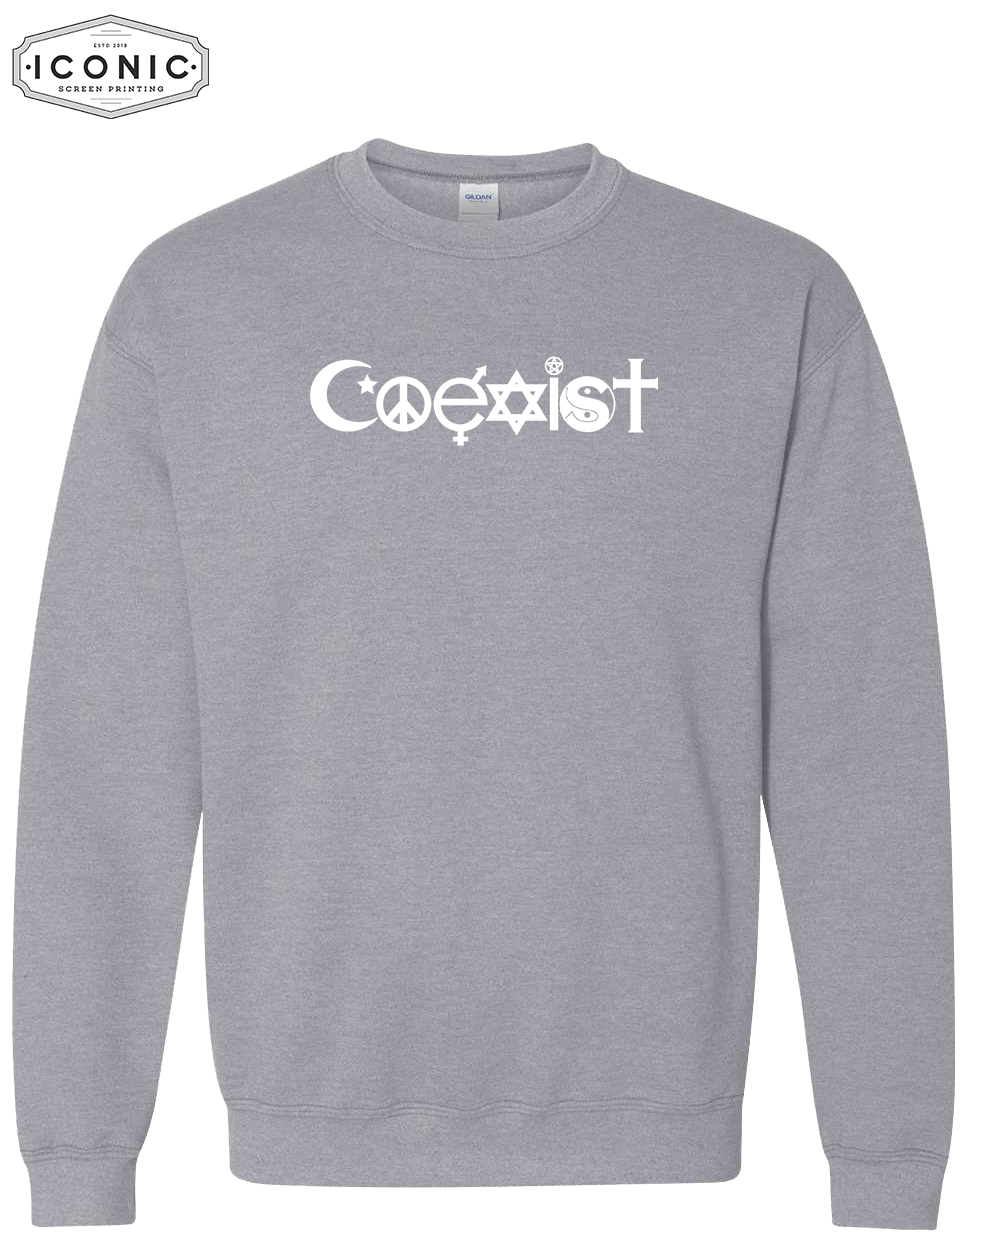 COEXIST- Heavy Blend Sweatshirt